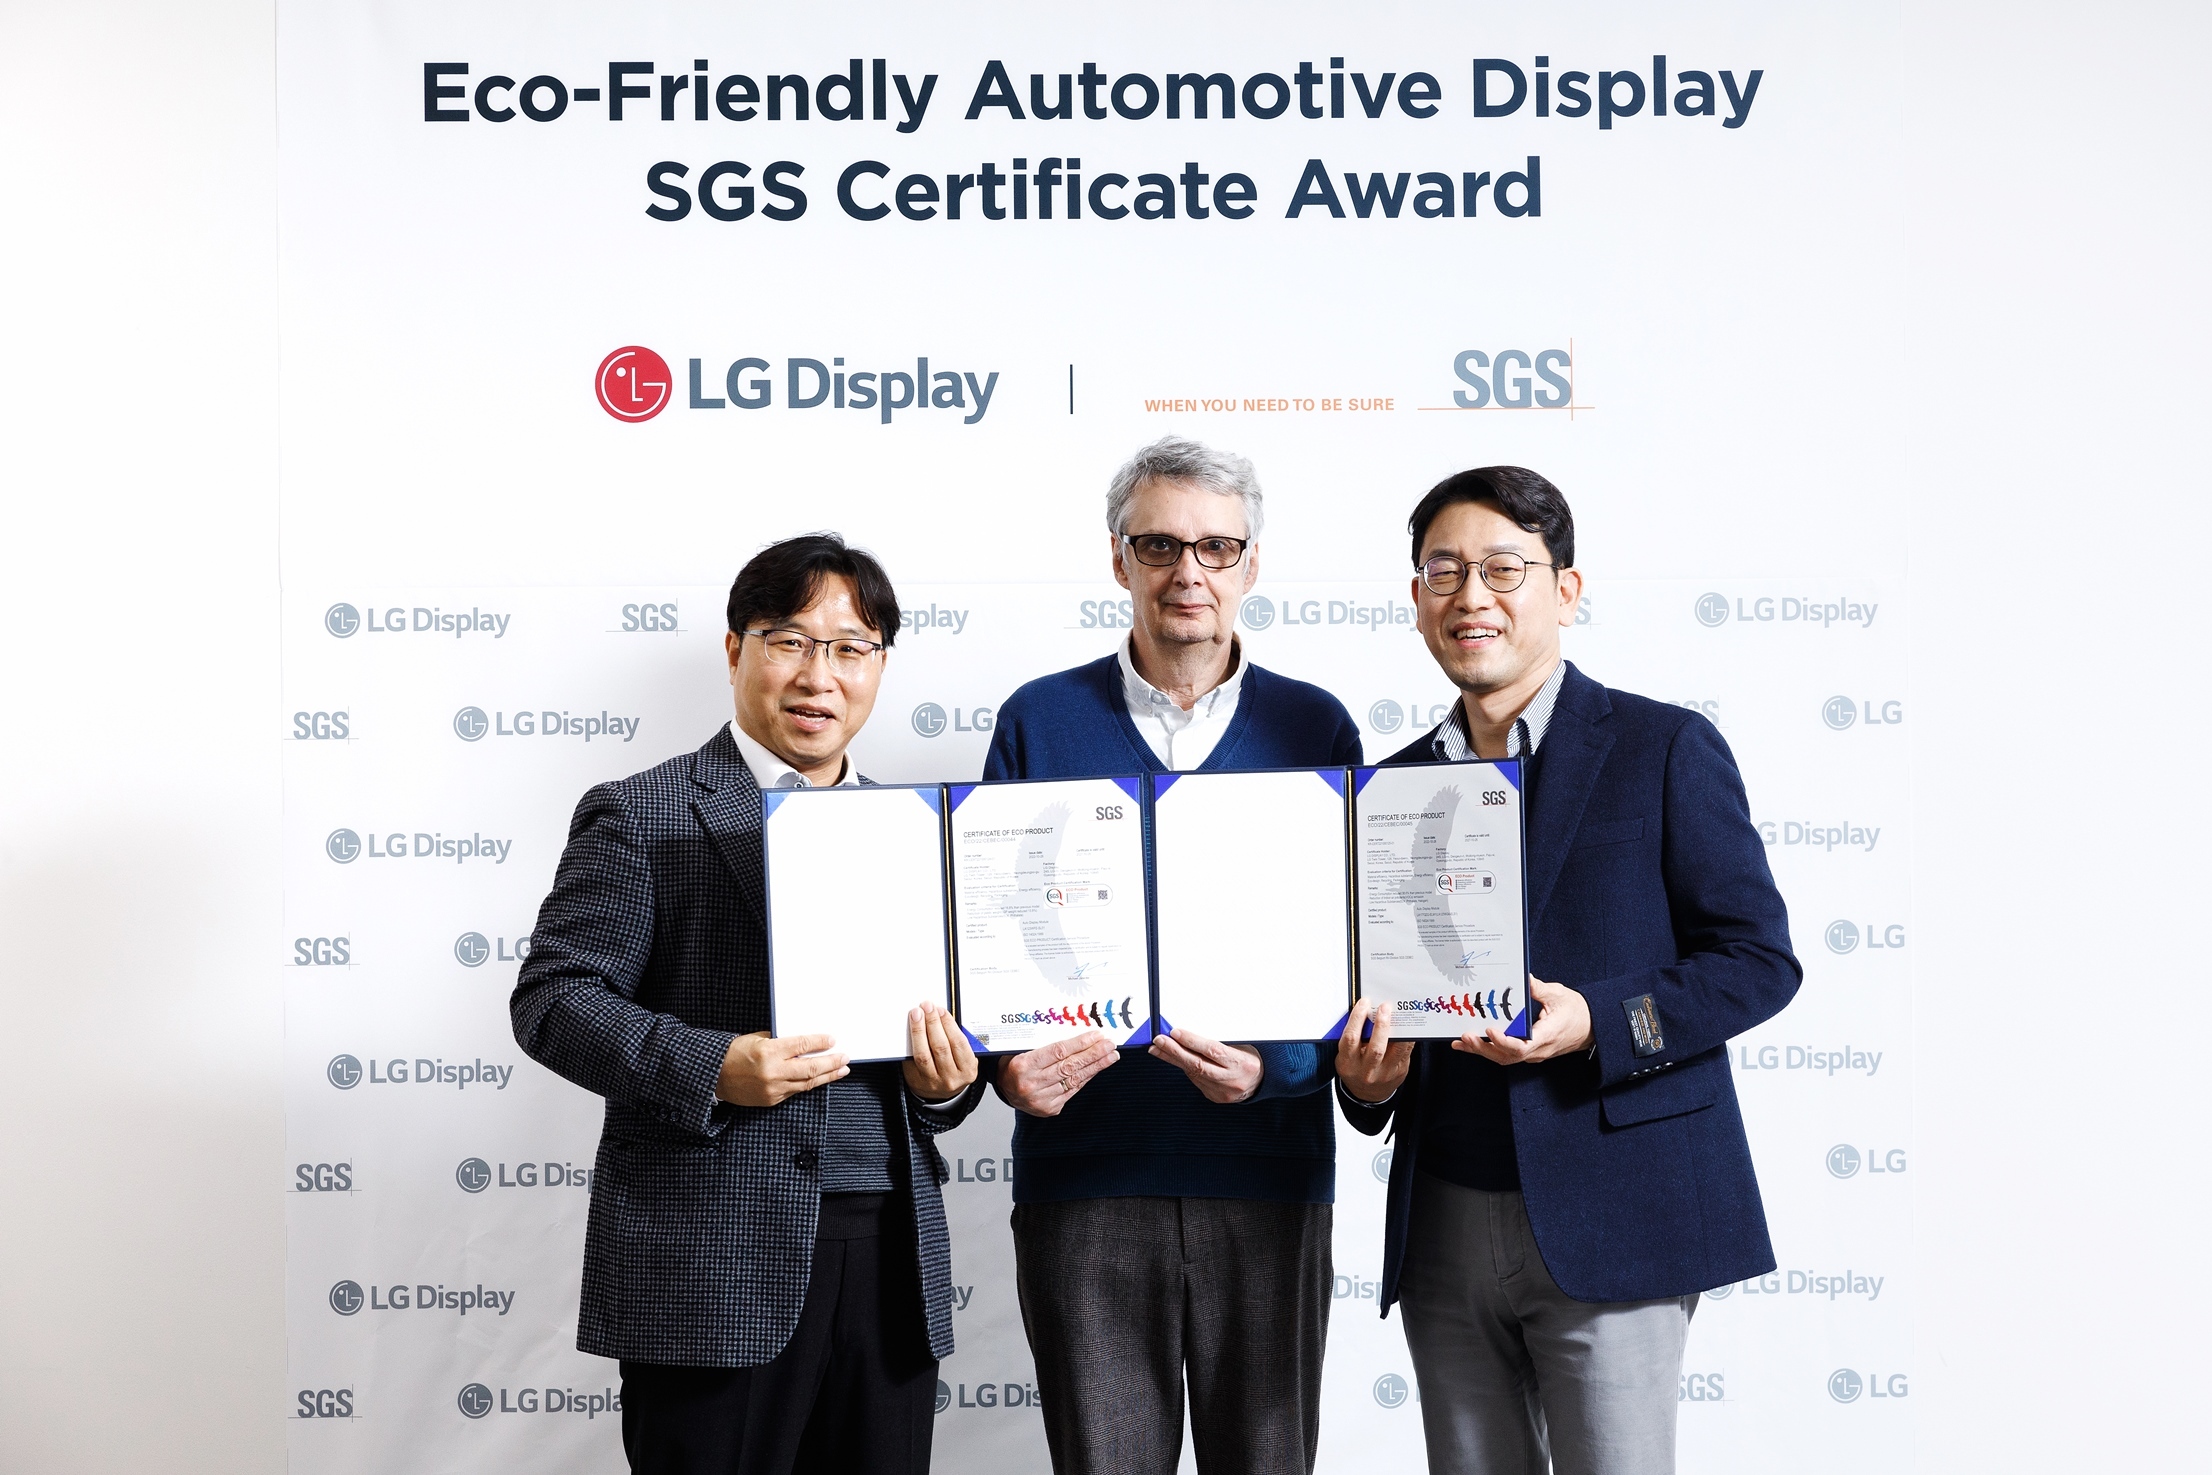 (图片)LG Display车载显示面板获得环保认证